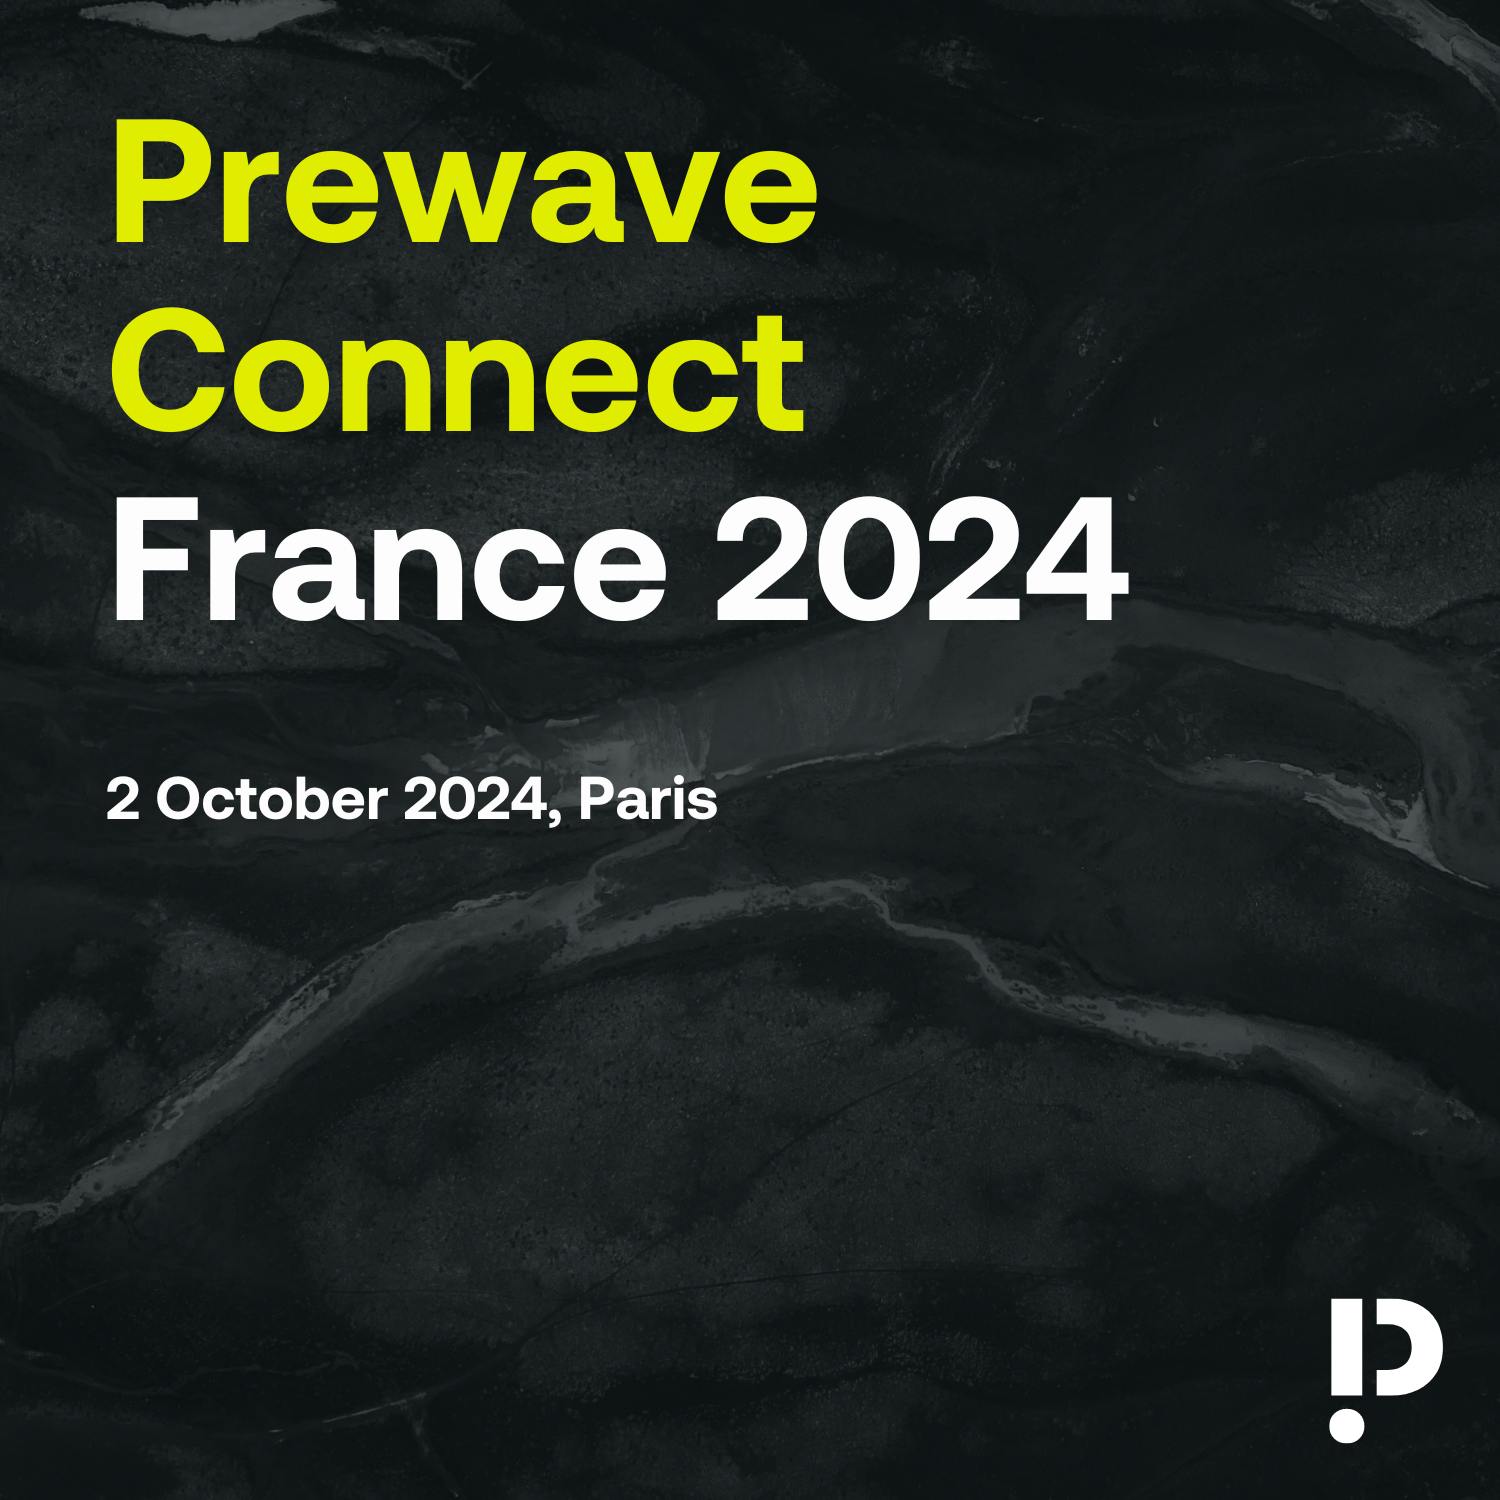 Prewave Connect France 2024